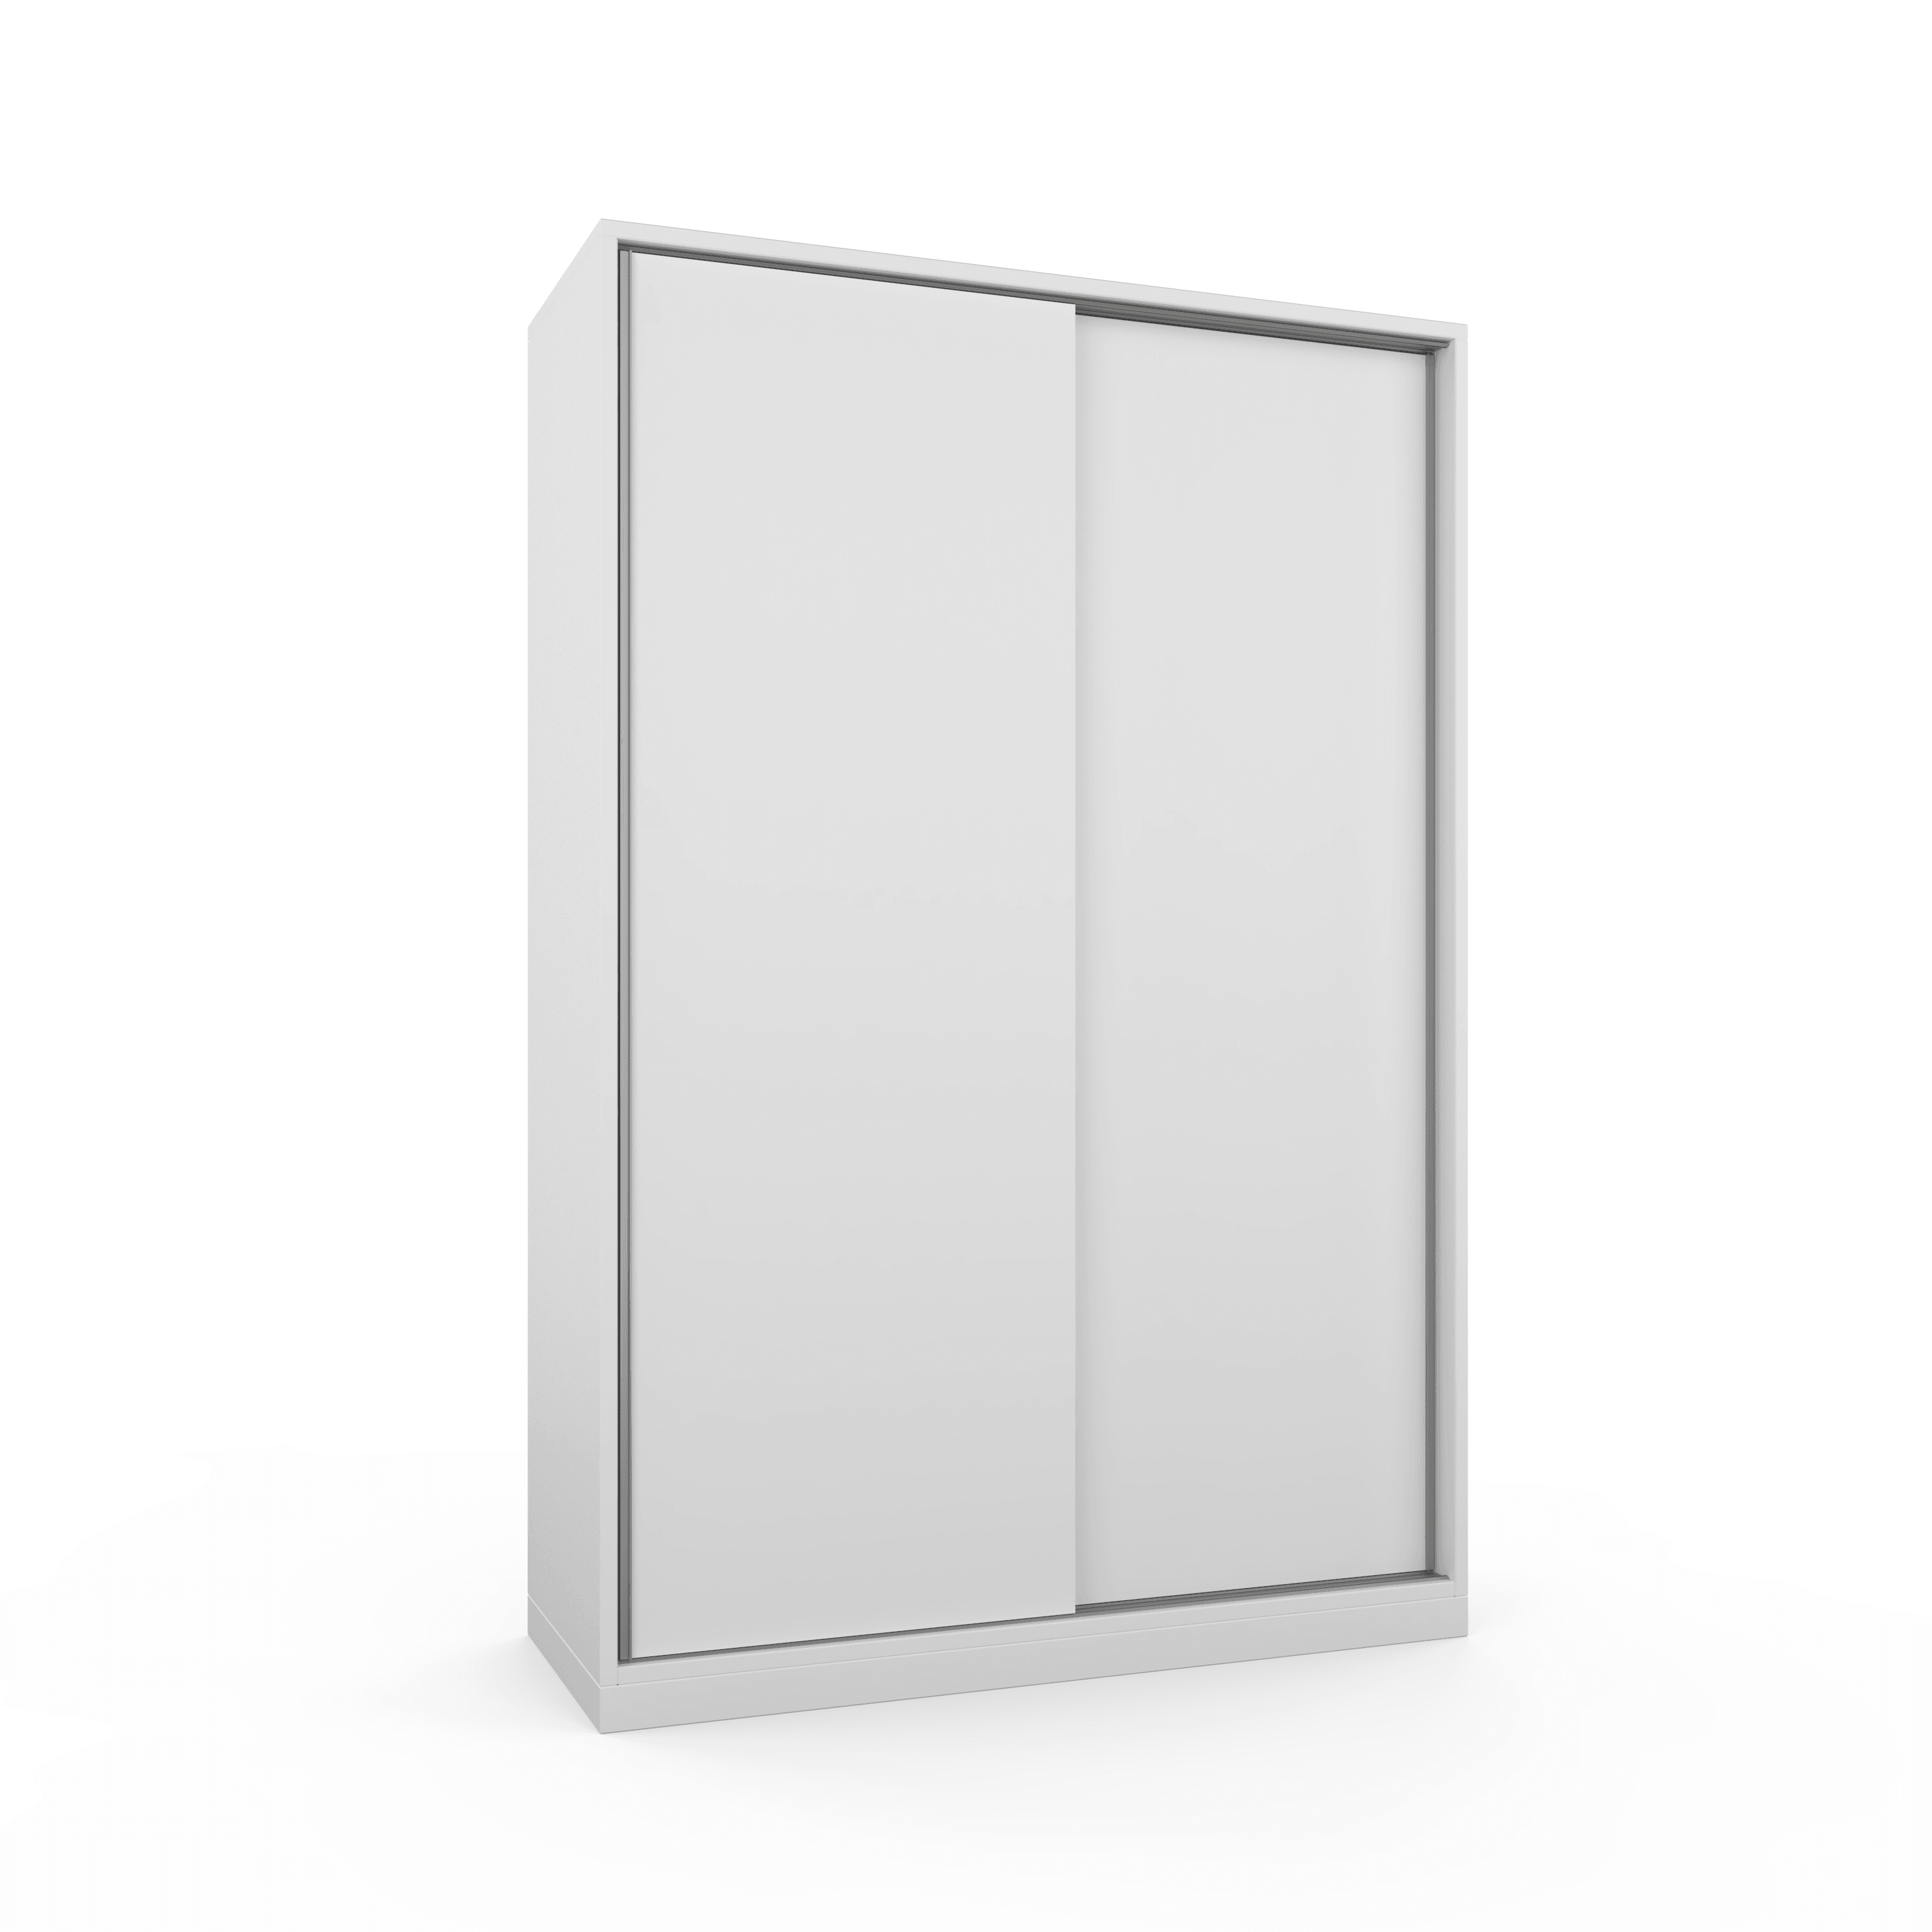 Vega Sliding Wardrobe (140x210) - White